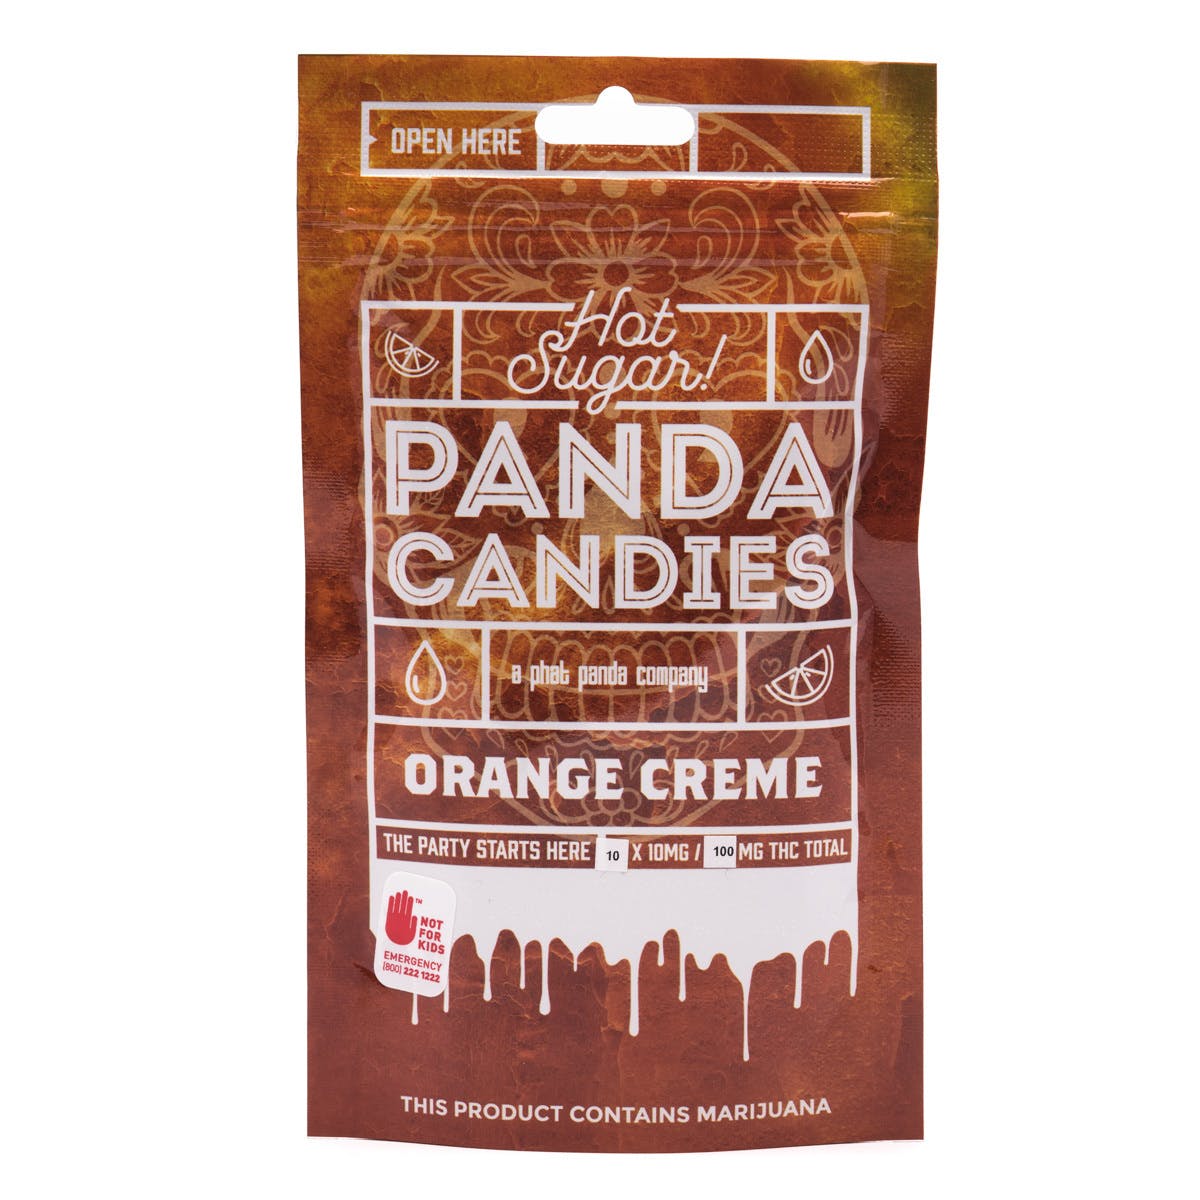 edible-hot-sugar-21-orange-creme-panda-candies-100mg